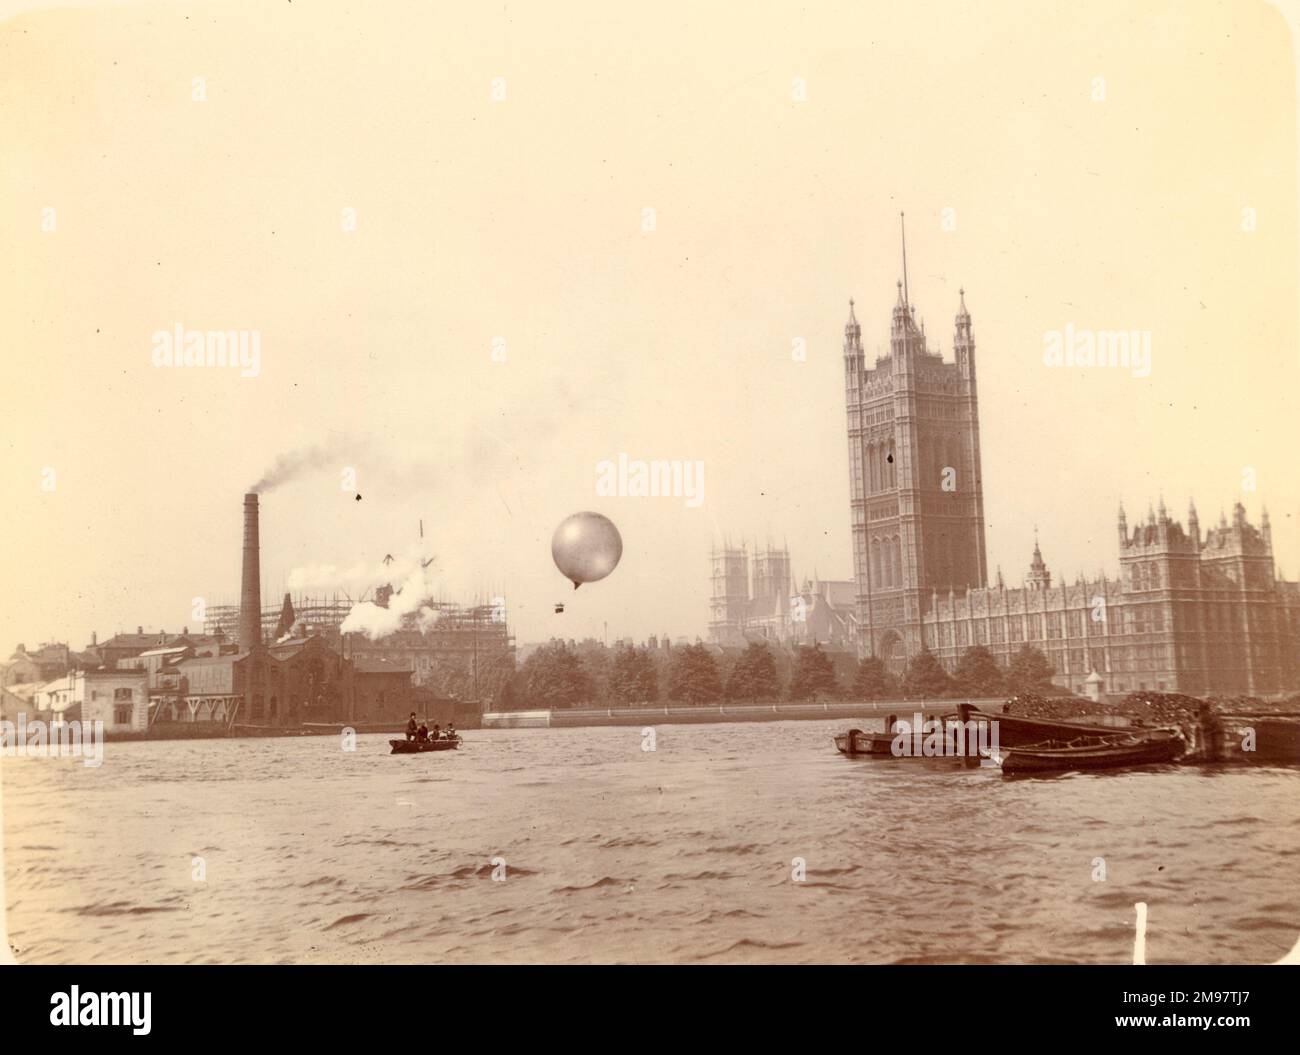 Der Ballon wurde von einem Auftritt losgelassen, um Fotos gegenüber den Houses of Parliament zu machen. Stockfoto